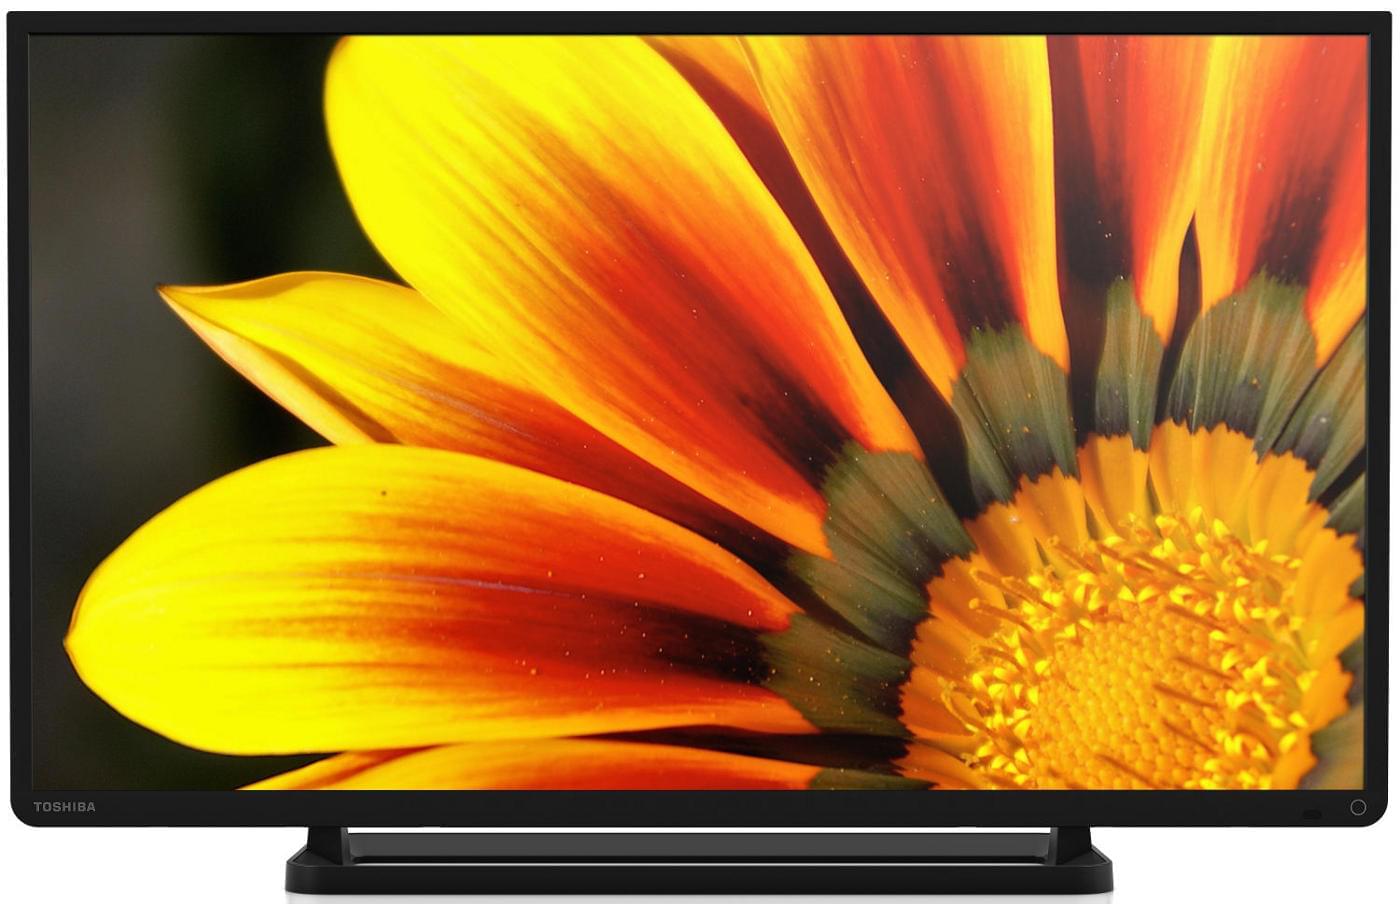 TV Toshiba 40L2433 - 40" (102cm) LED HDTV 1080P